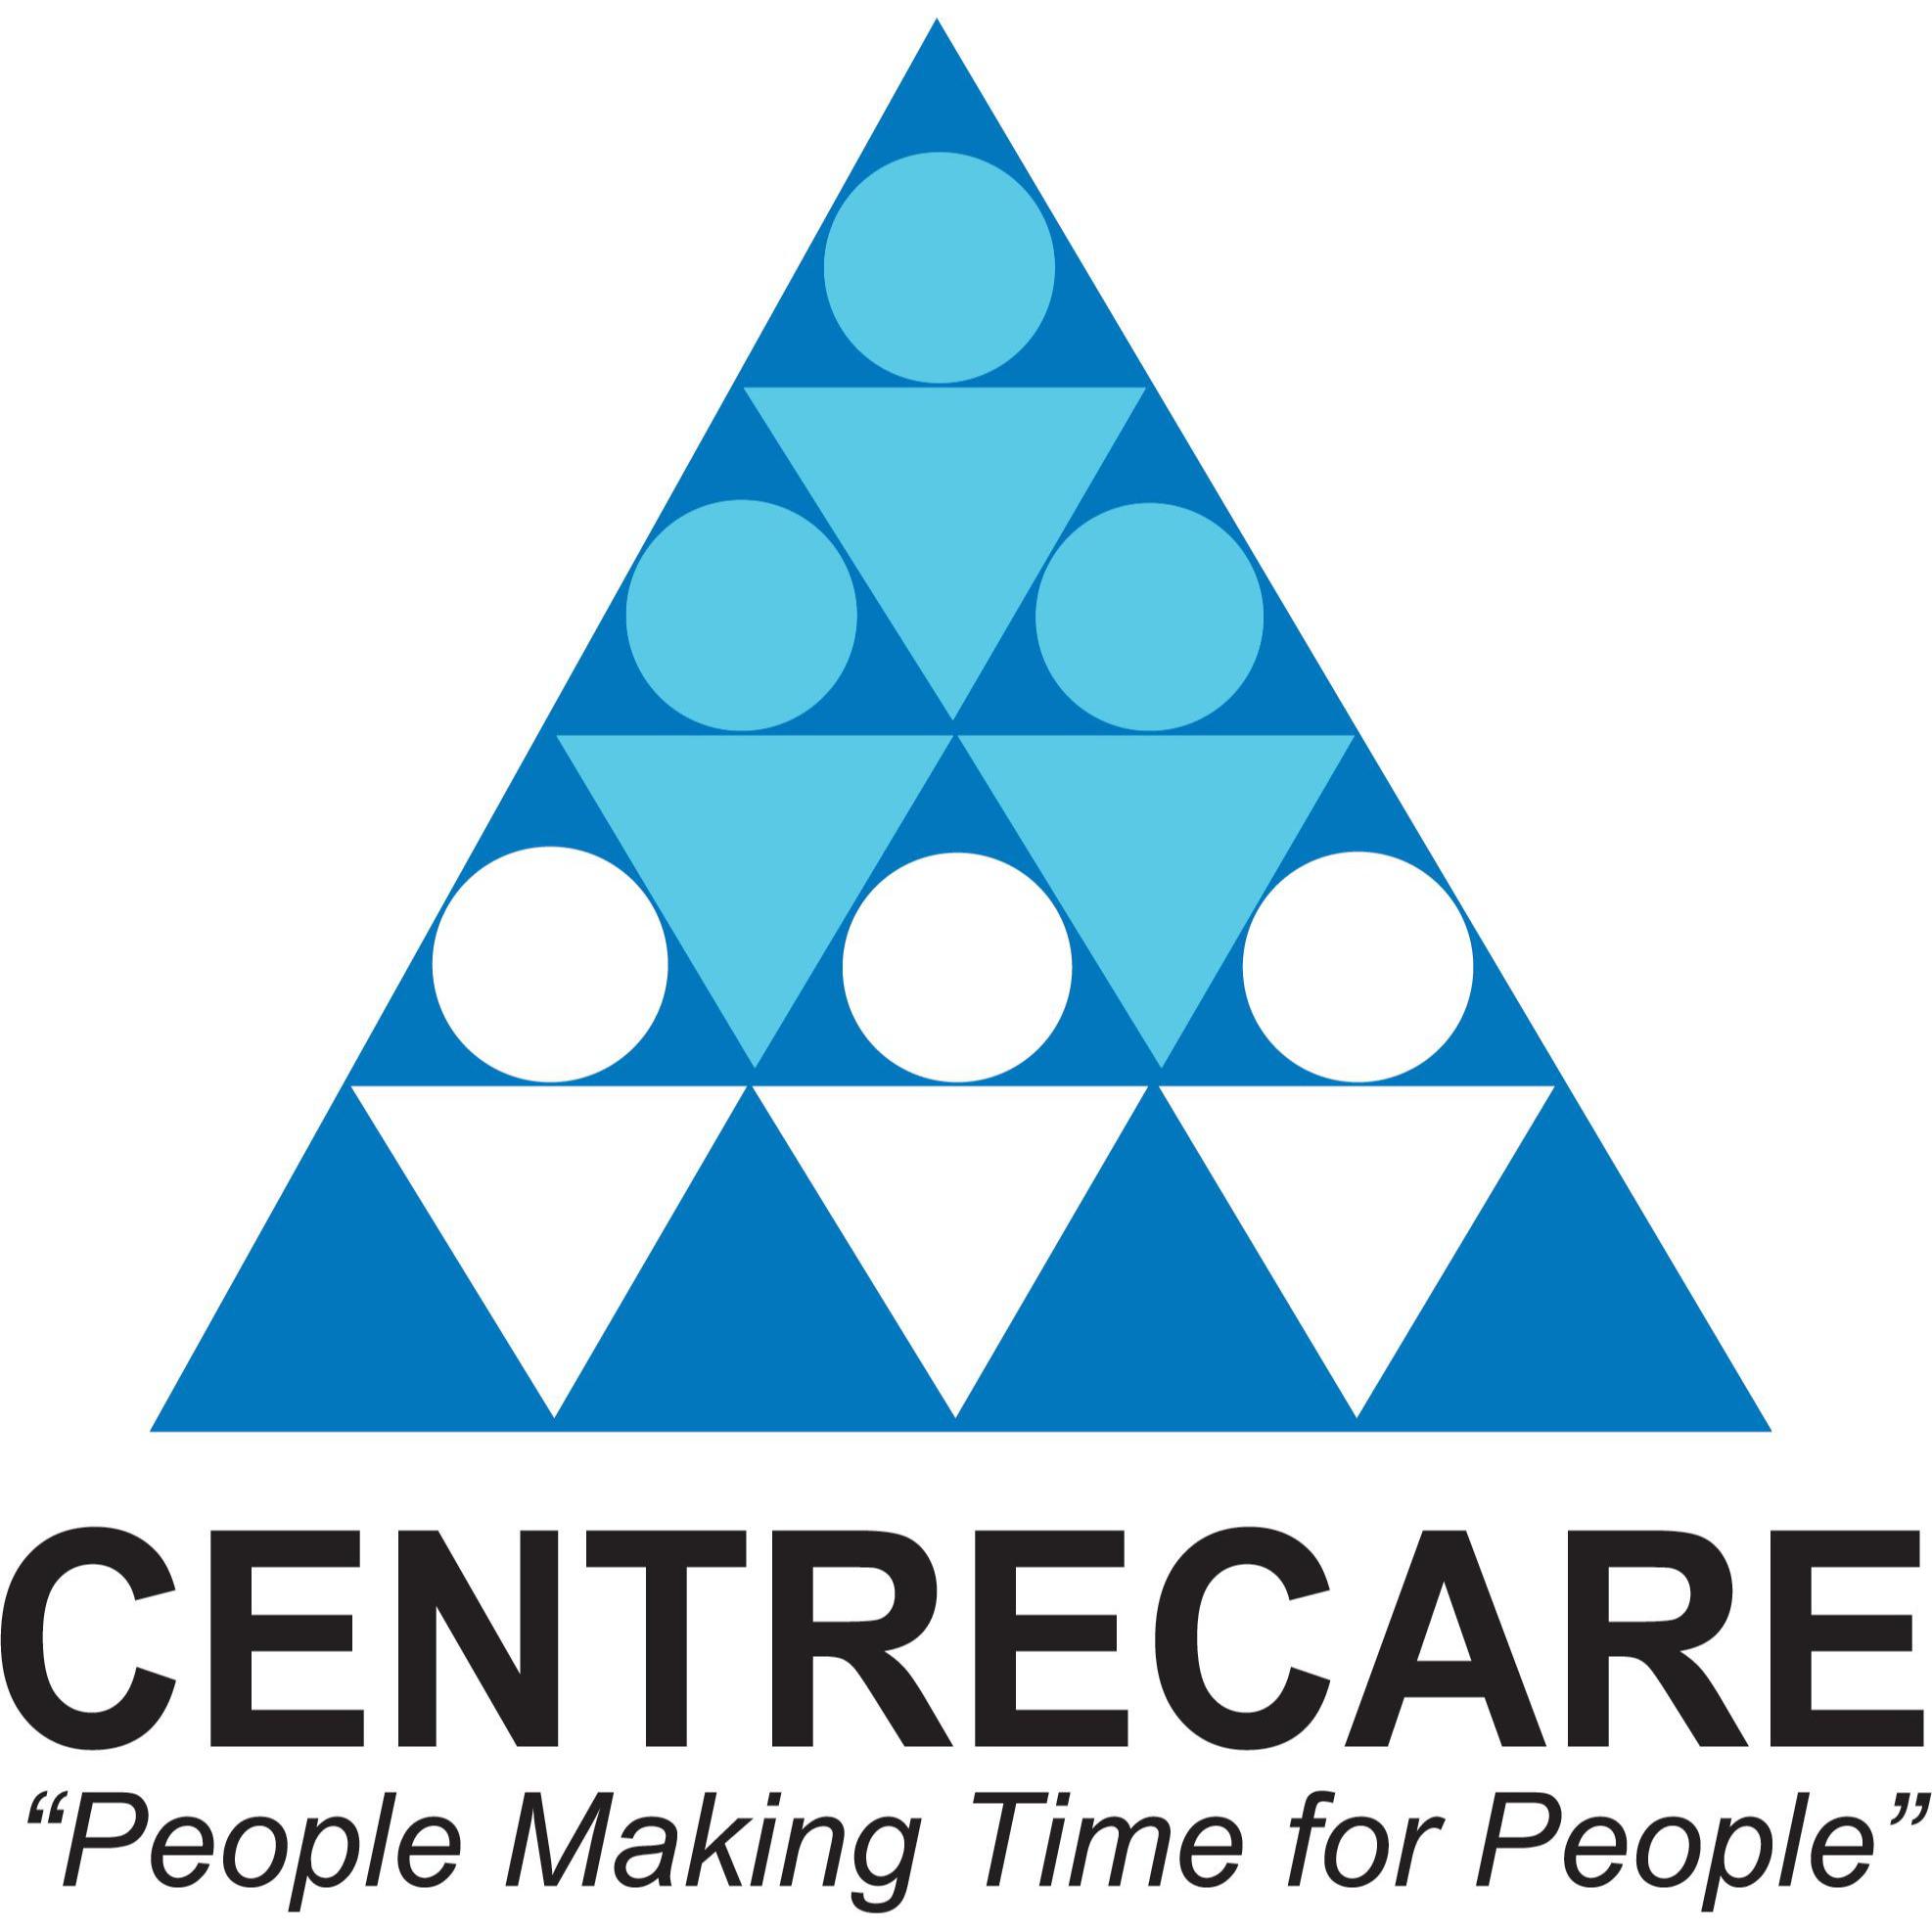 Centrecare - Midland, WA 6056 - (08) 9436 0600 | ShowMeLocal.com